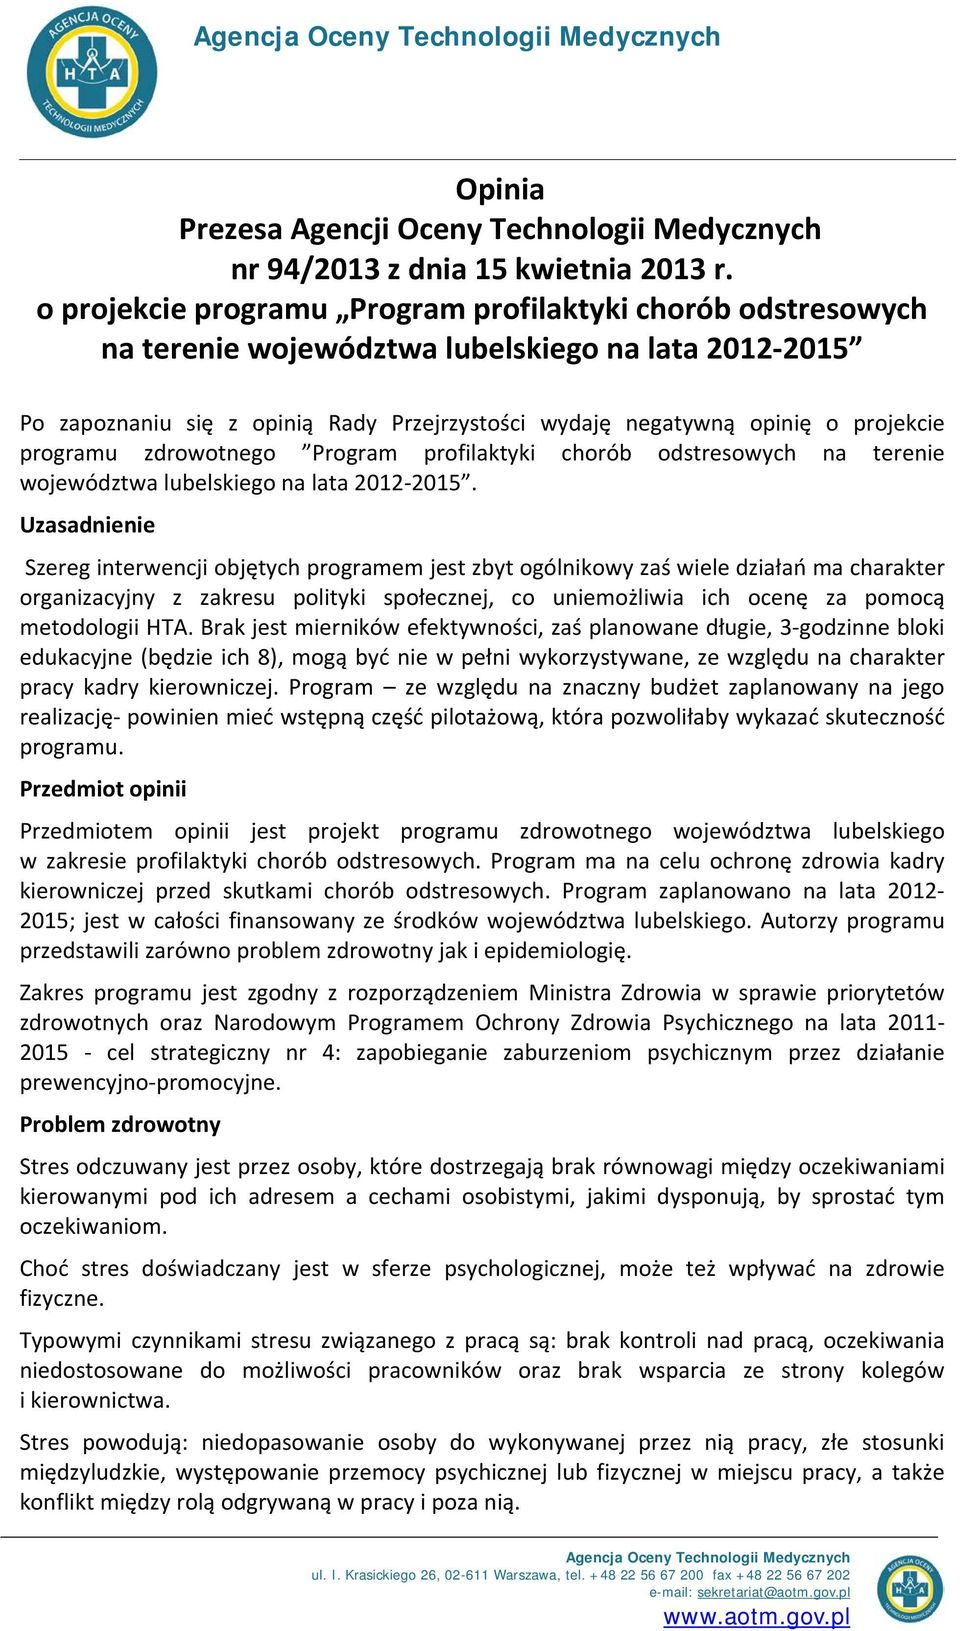 programu zdrowotnego Program profilaktyki chorób odstresowych na terenie województwa lubelskiego na lata 2012-2015.